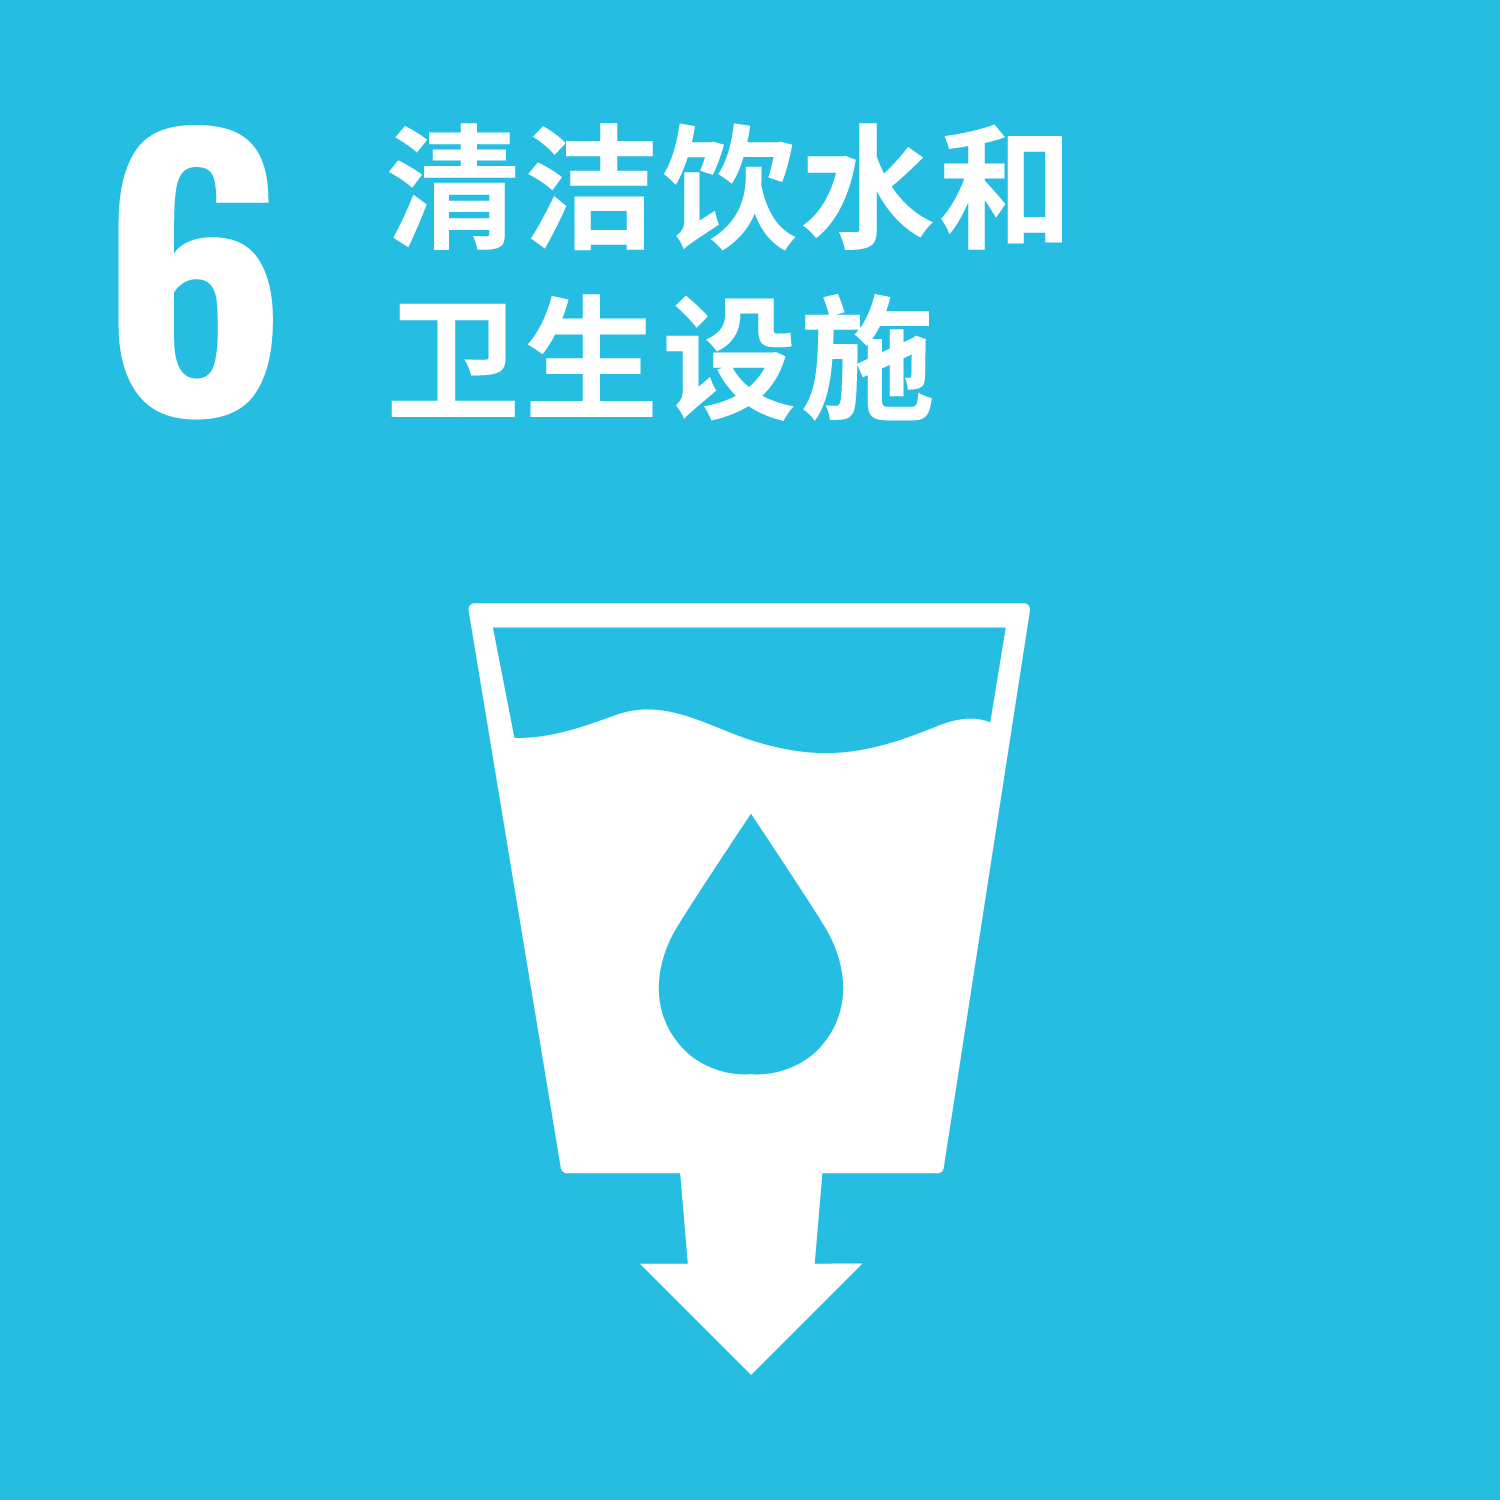 SDGs 6 洁净水质与公共卫生